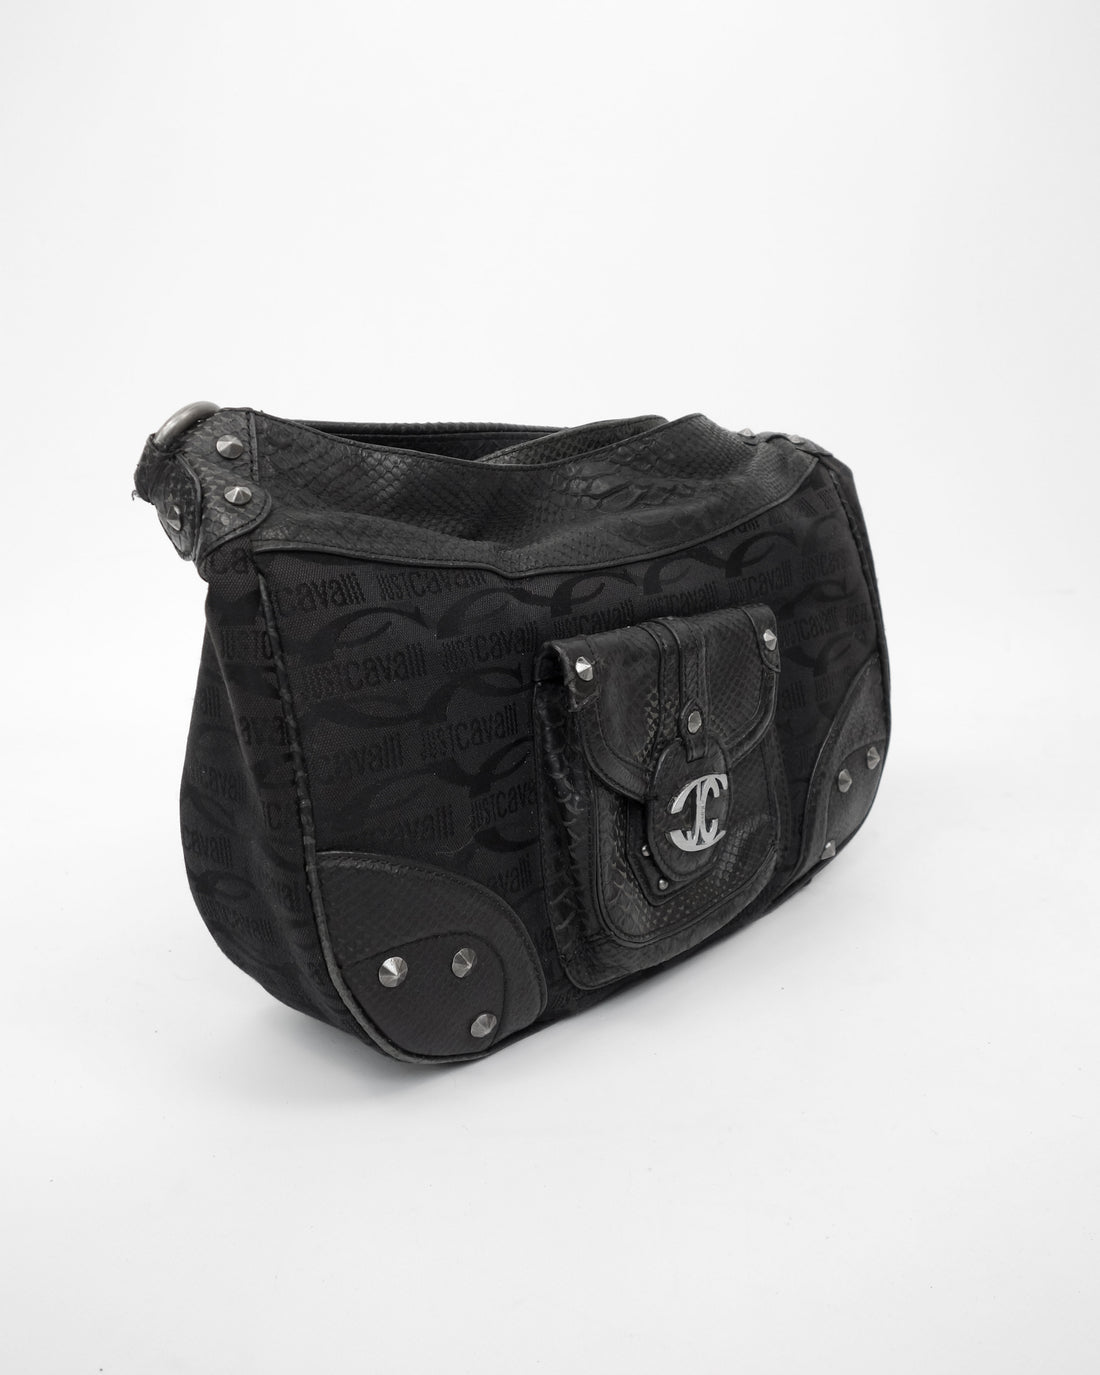 Just Cavalli Black Texture Leather Bag 2000's